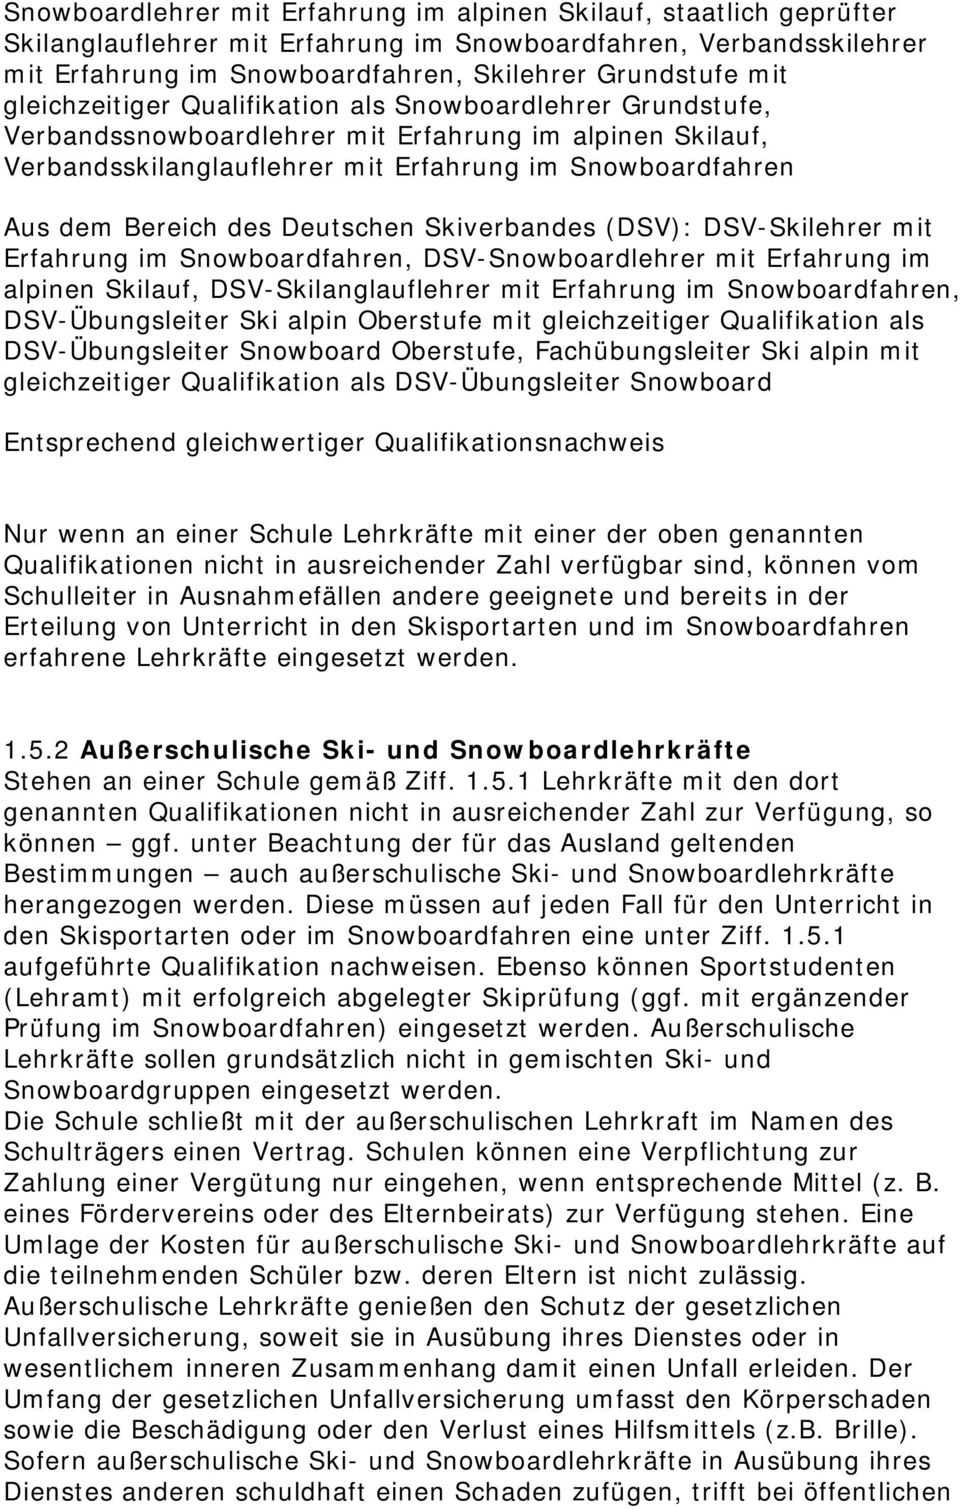 Deutschen Skiverbandes (DSV): DSV-Skilehrer mit Erfahrung im Snowboardfahren, DSV-Snowboardlehrer mit Erfahrung im alpinen Skilauf, DSV-Skilanglauflehrer mit Erfahrung im Snowboardfahren,